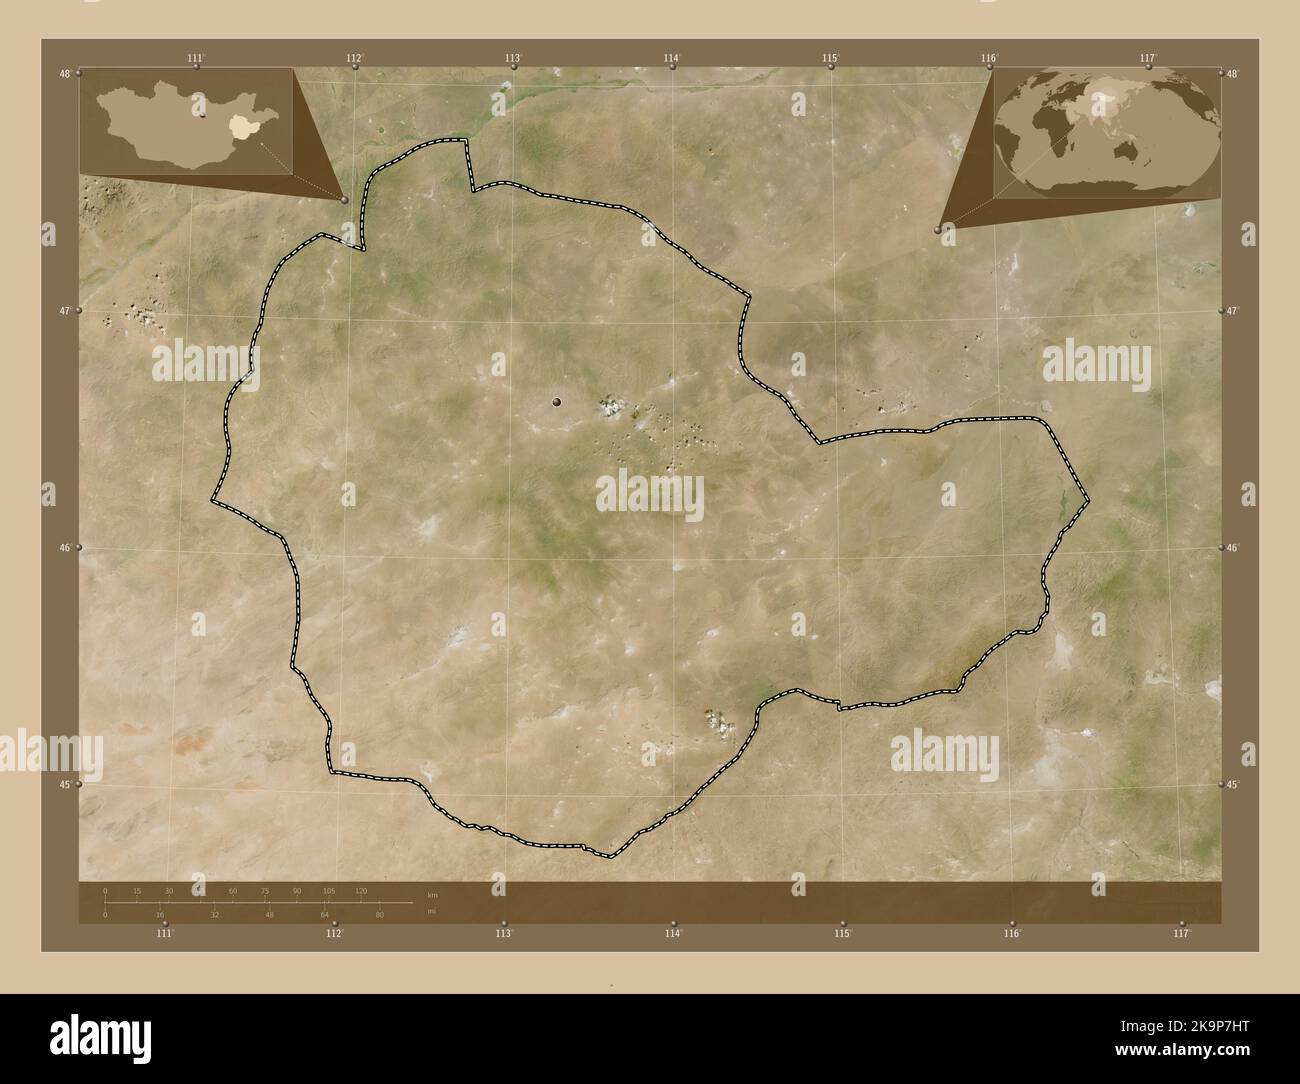 Suhbaatar, province de Mongolie. Carte satellite basse résolution. Cartes d'emplacement auxiliaire d'angle Banque D'Images